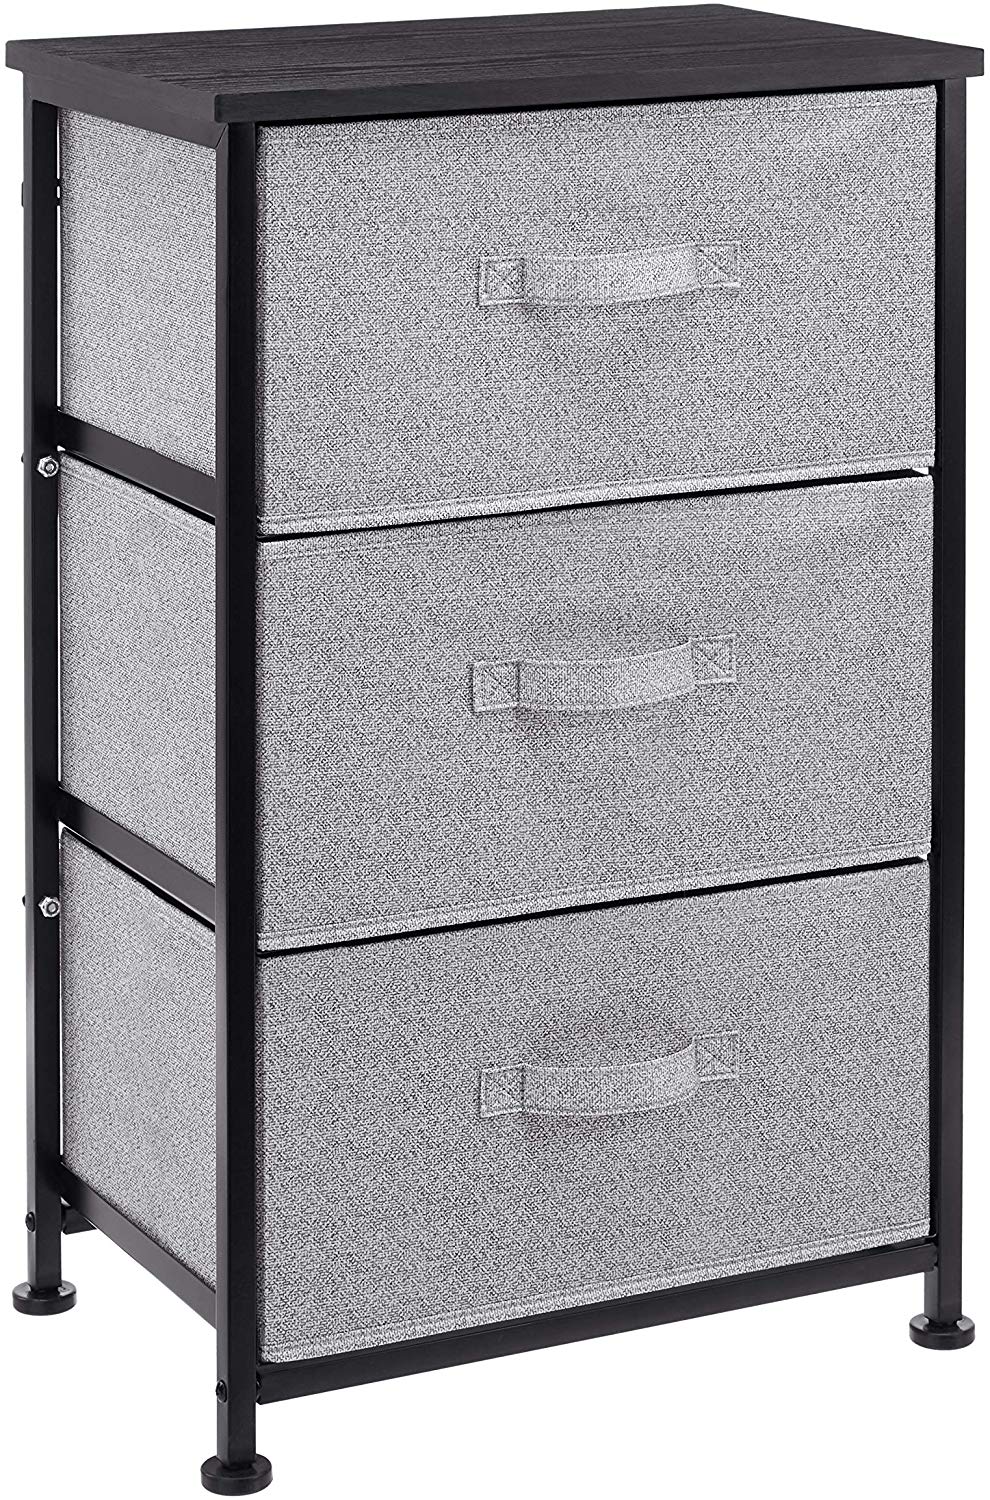 Mueble de almacenaje con 3 cajones AmazonBasics